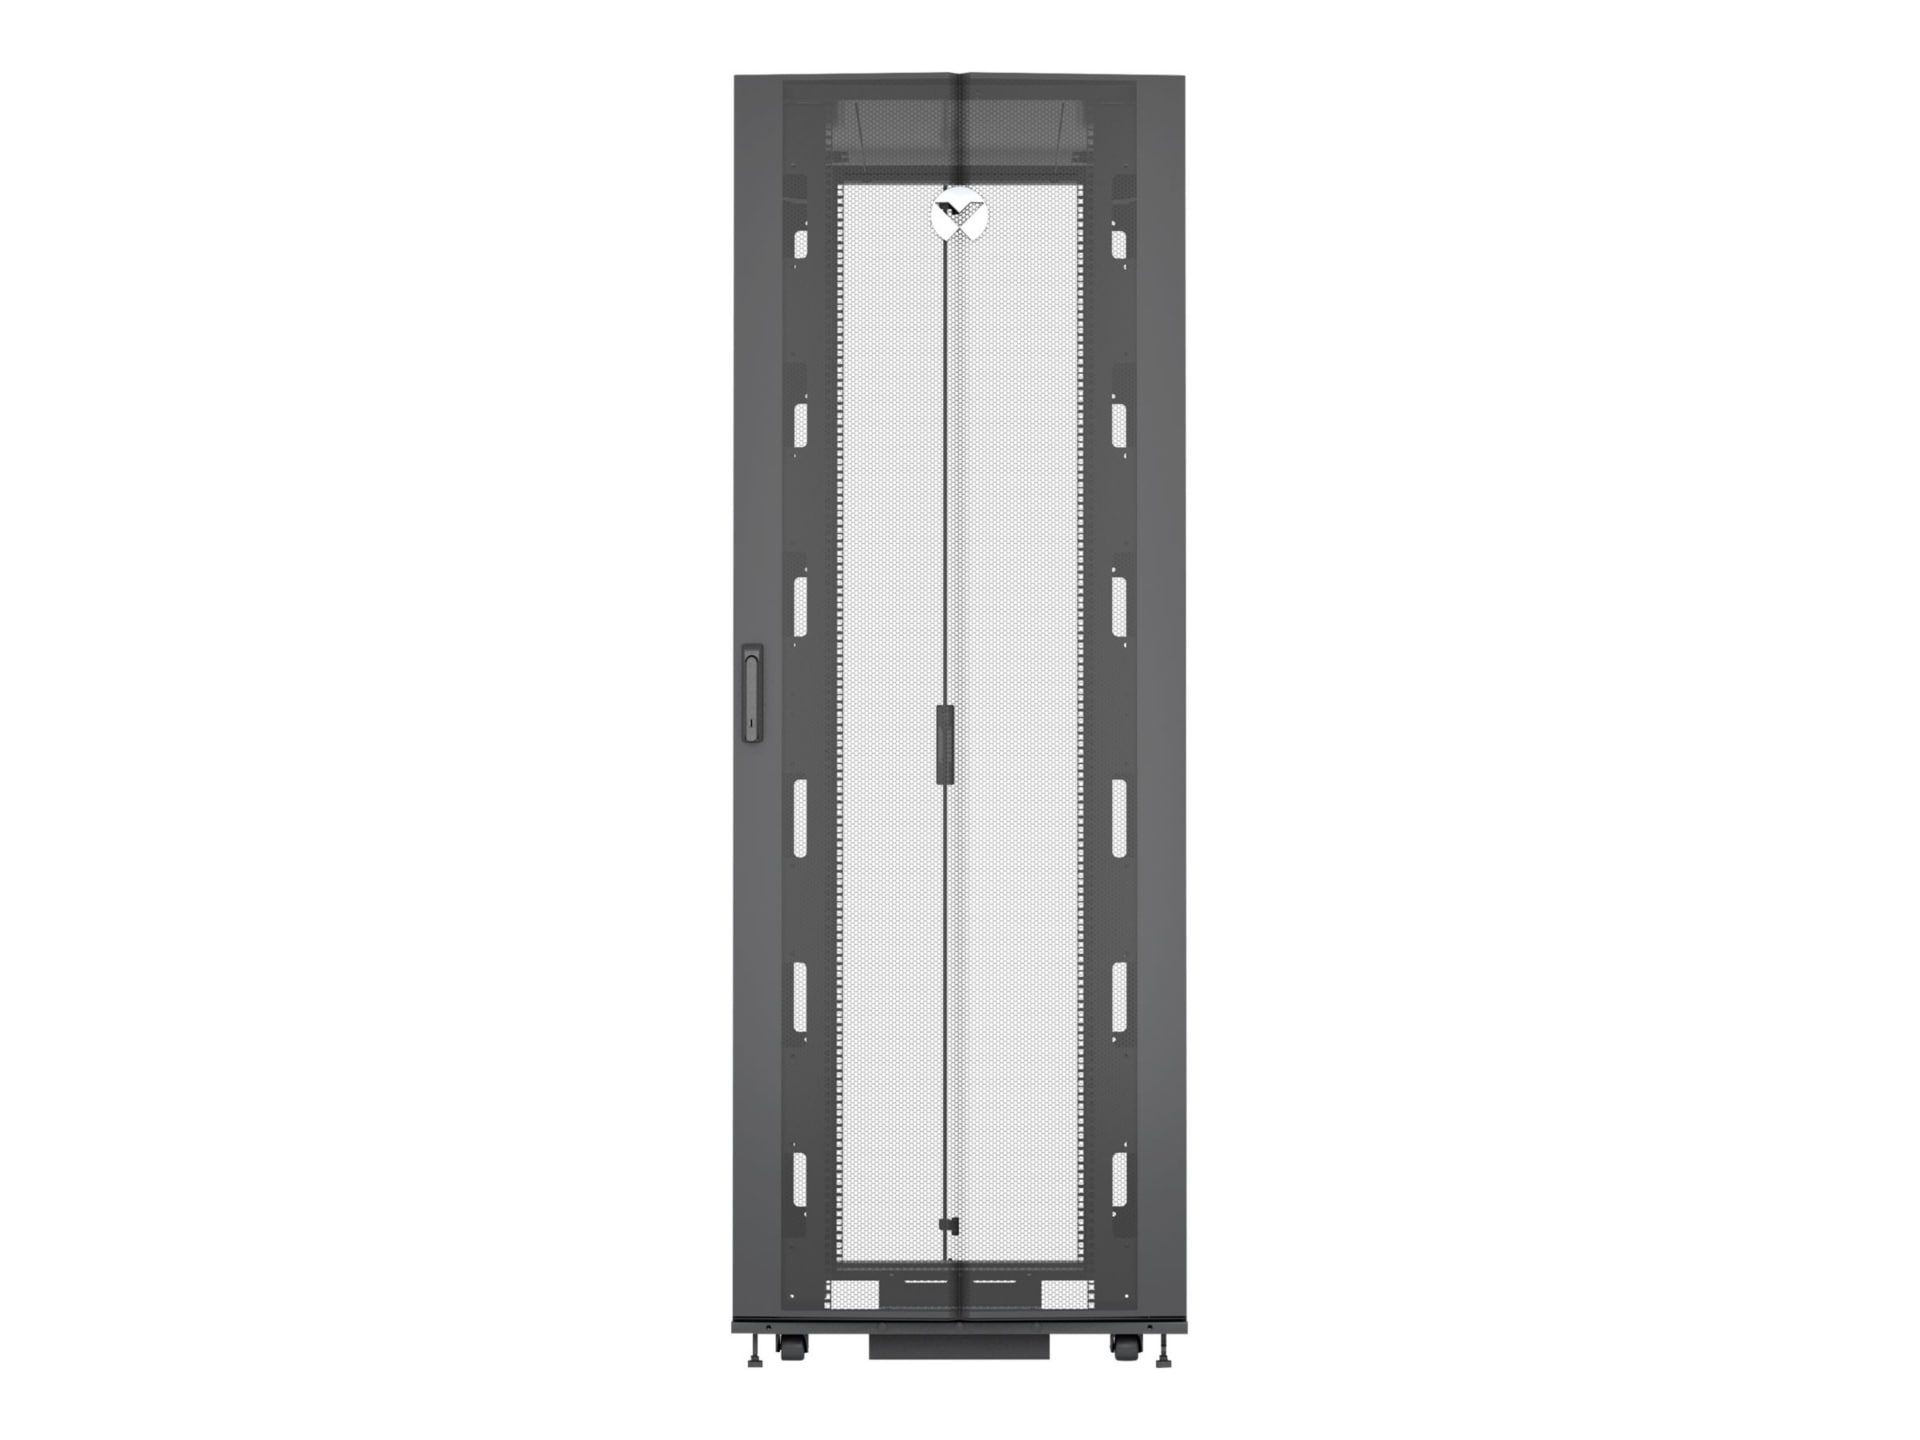 Vertiv VR Rack - 42U Server Rack Enclosure| 800x1200mm| 19-inch Cabinet